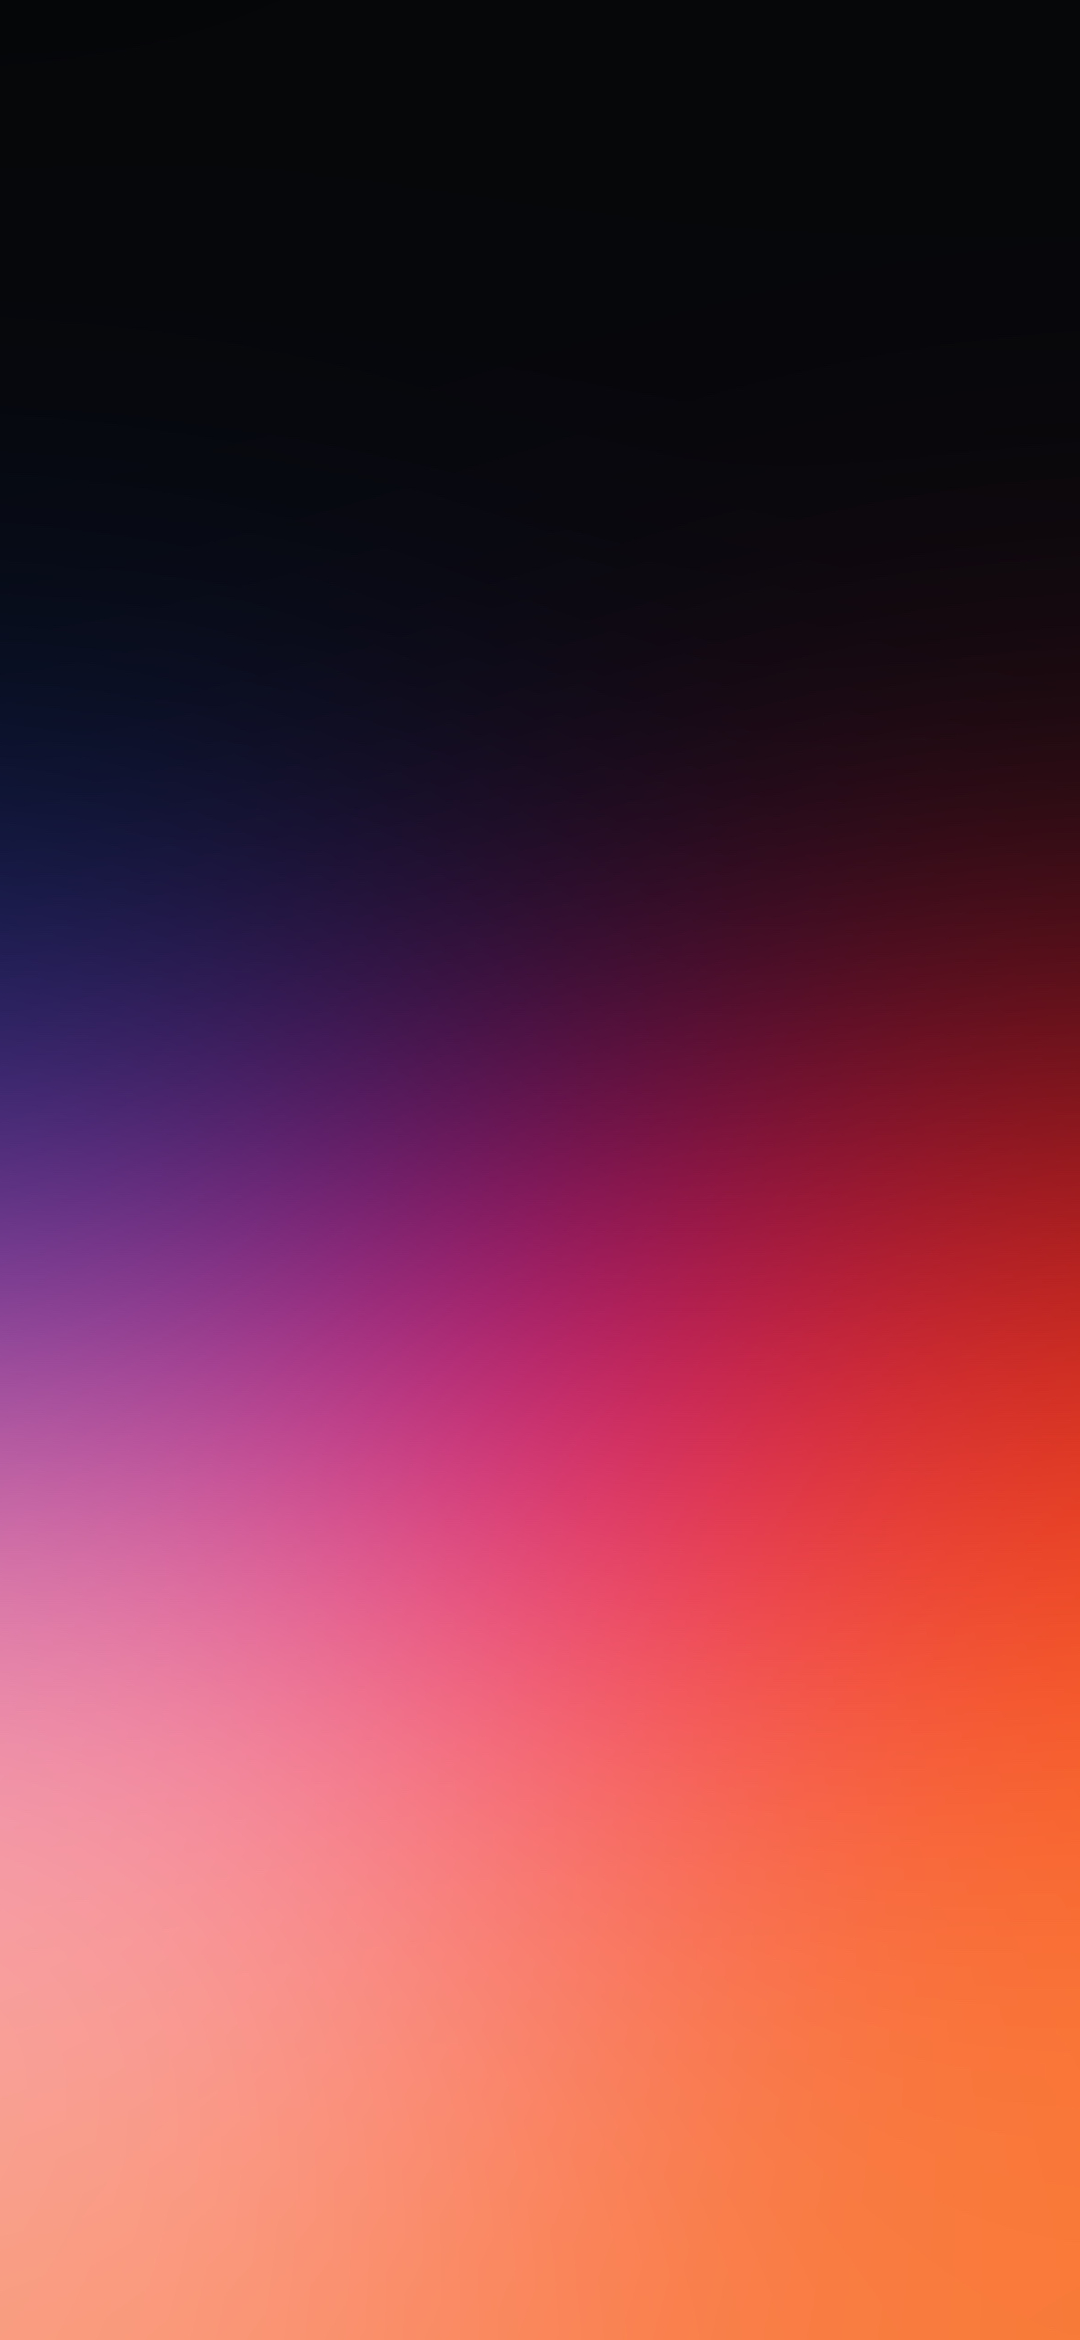 濃い紫と淡いオレンジのグラデーション Redmagic 5 Android スマホ壁紙 待ち受け スマラン